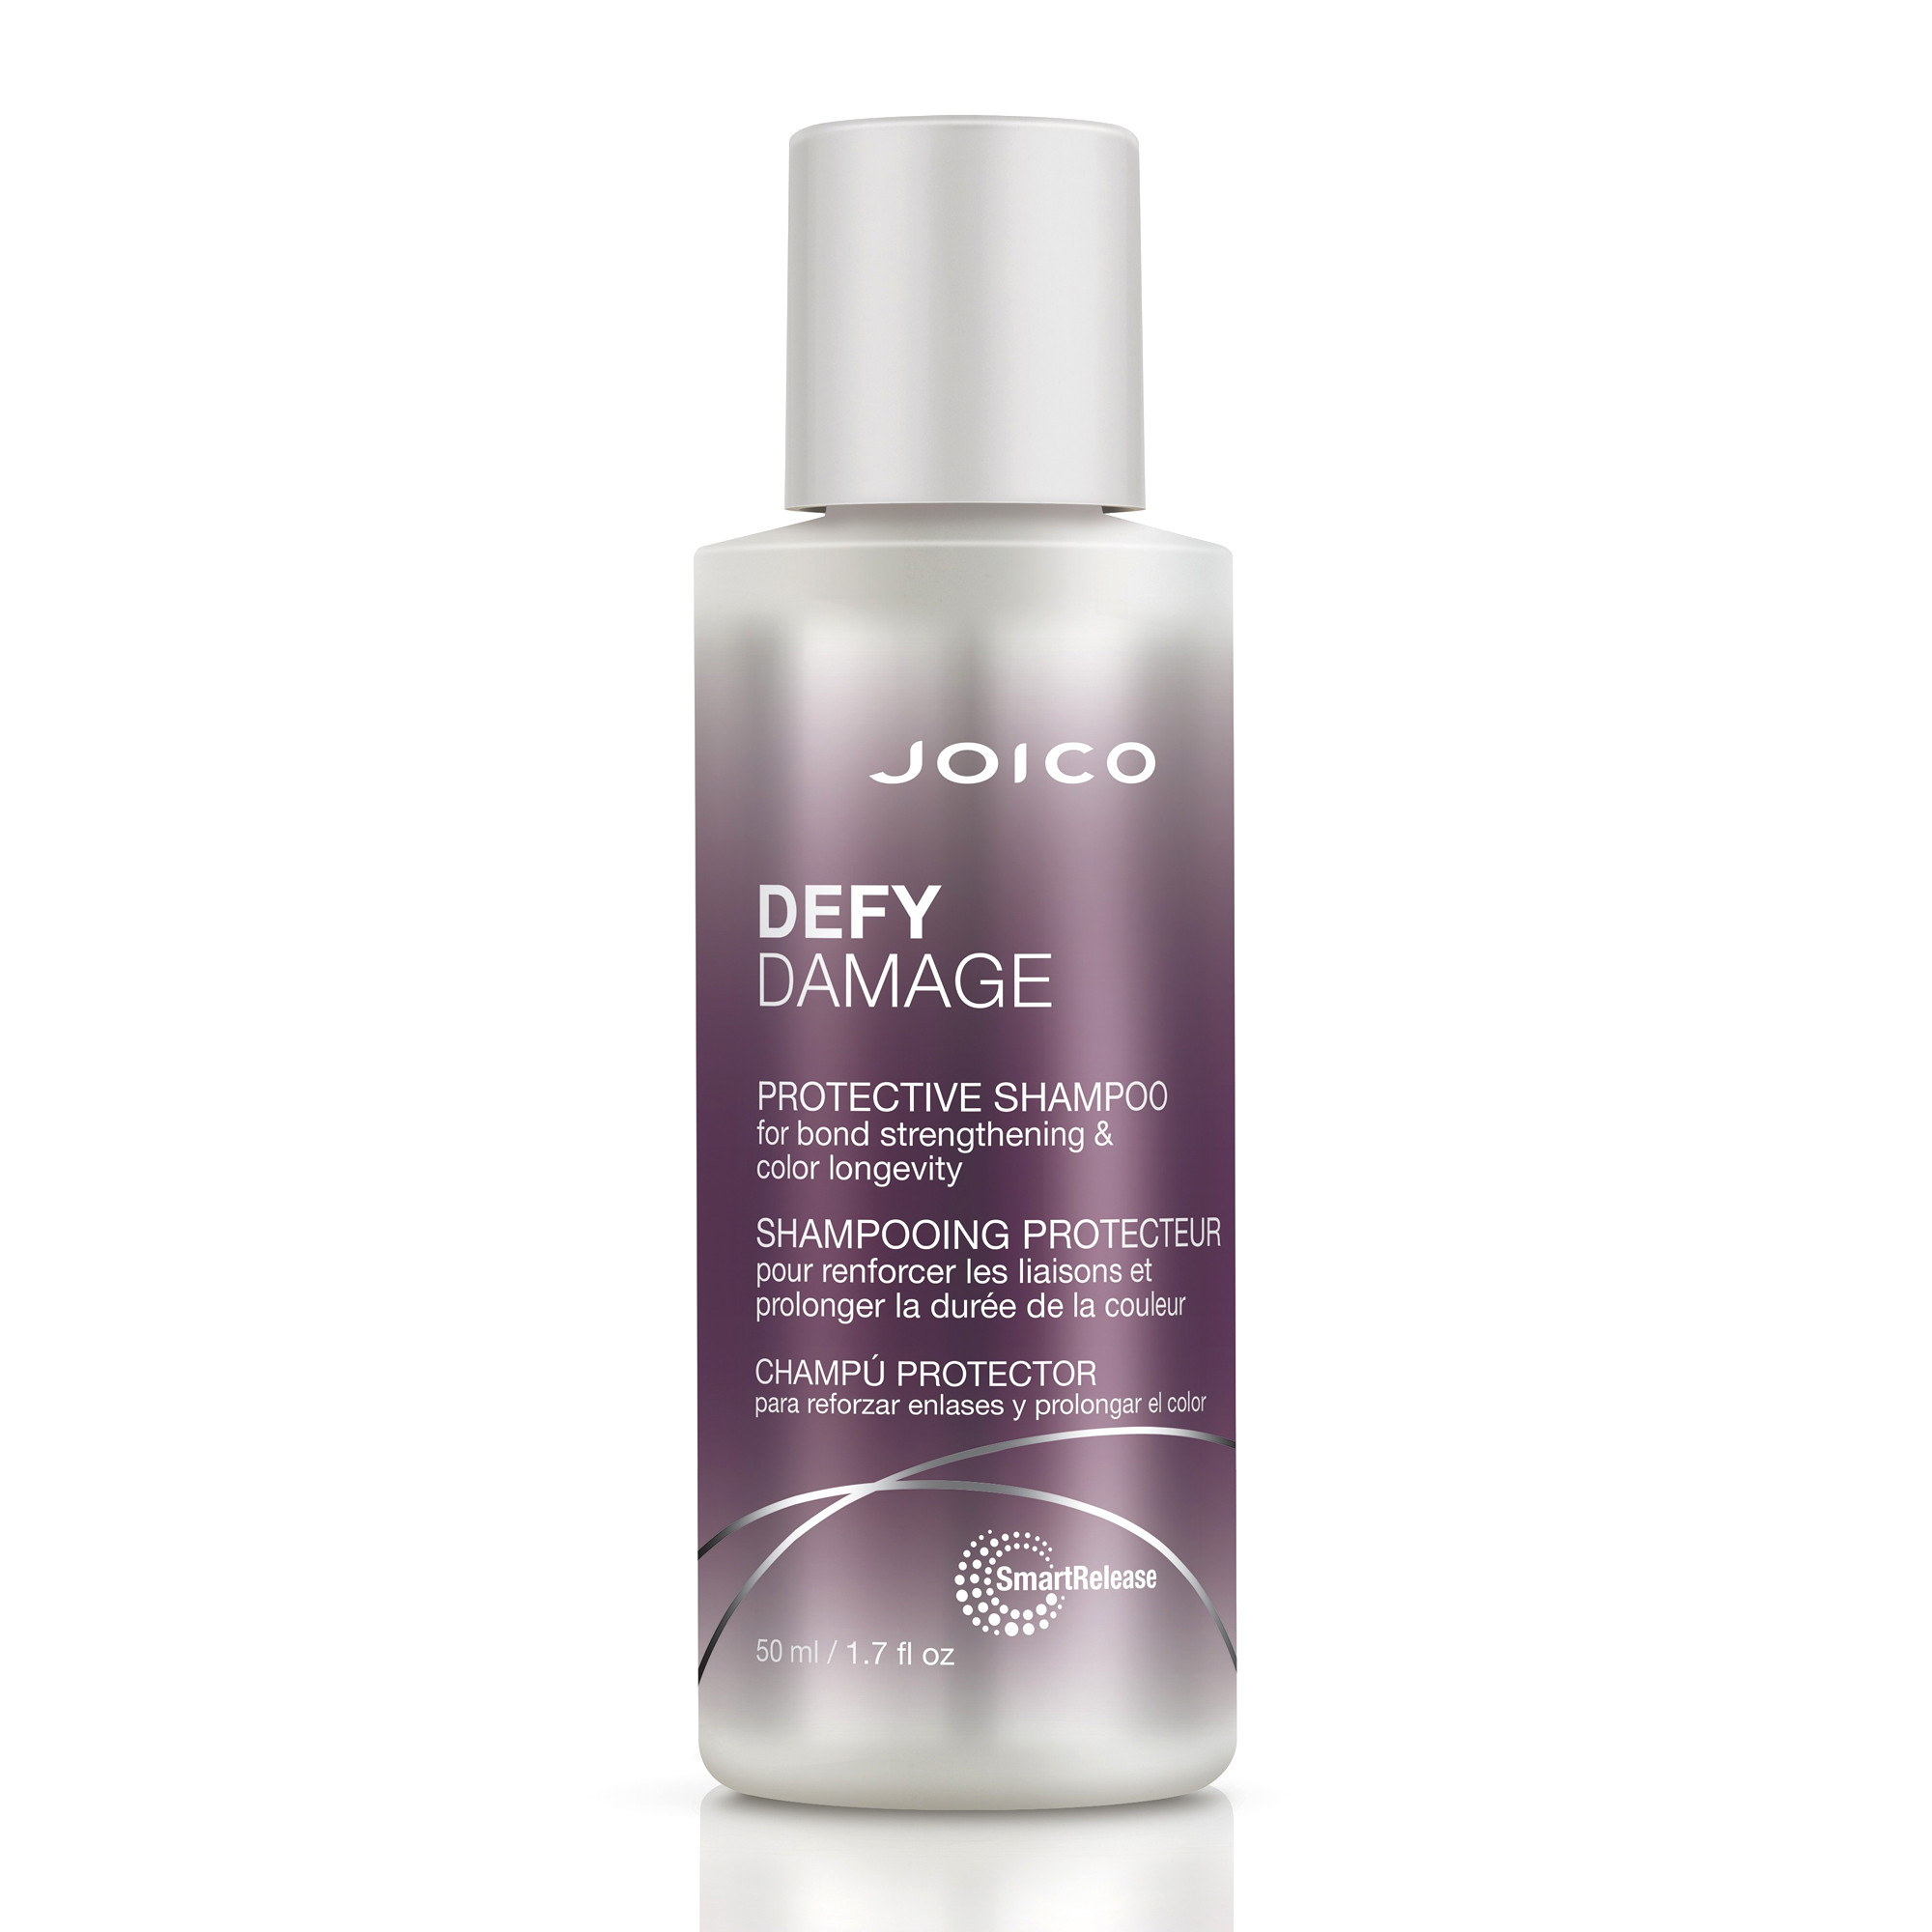 Joico Defy Damage Protective Shampoo Защитный шампунь для укрепления дисульфидных связей и стойкости цвета